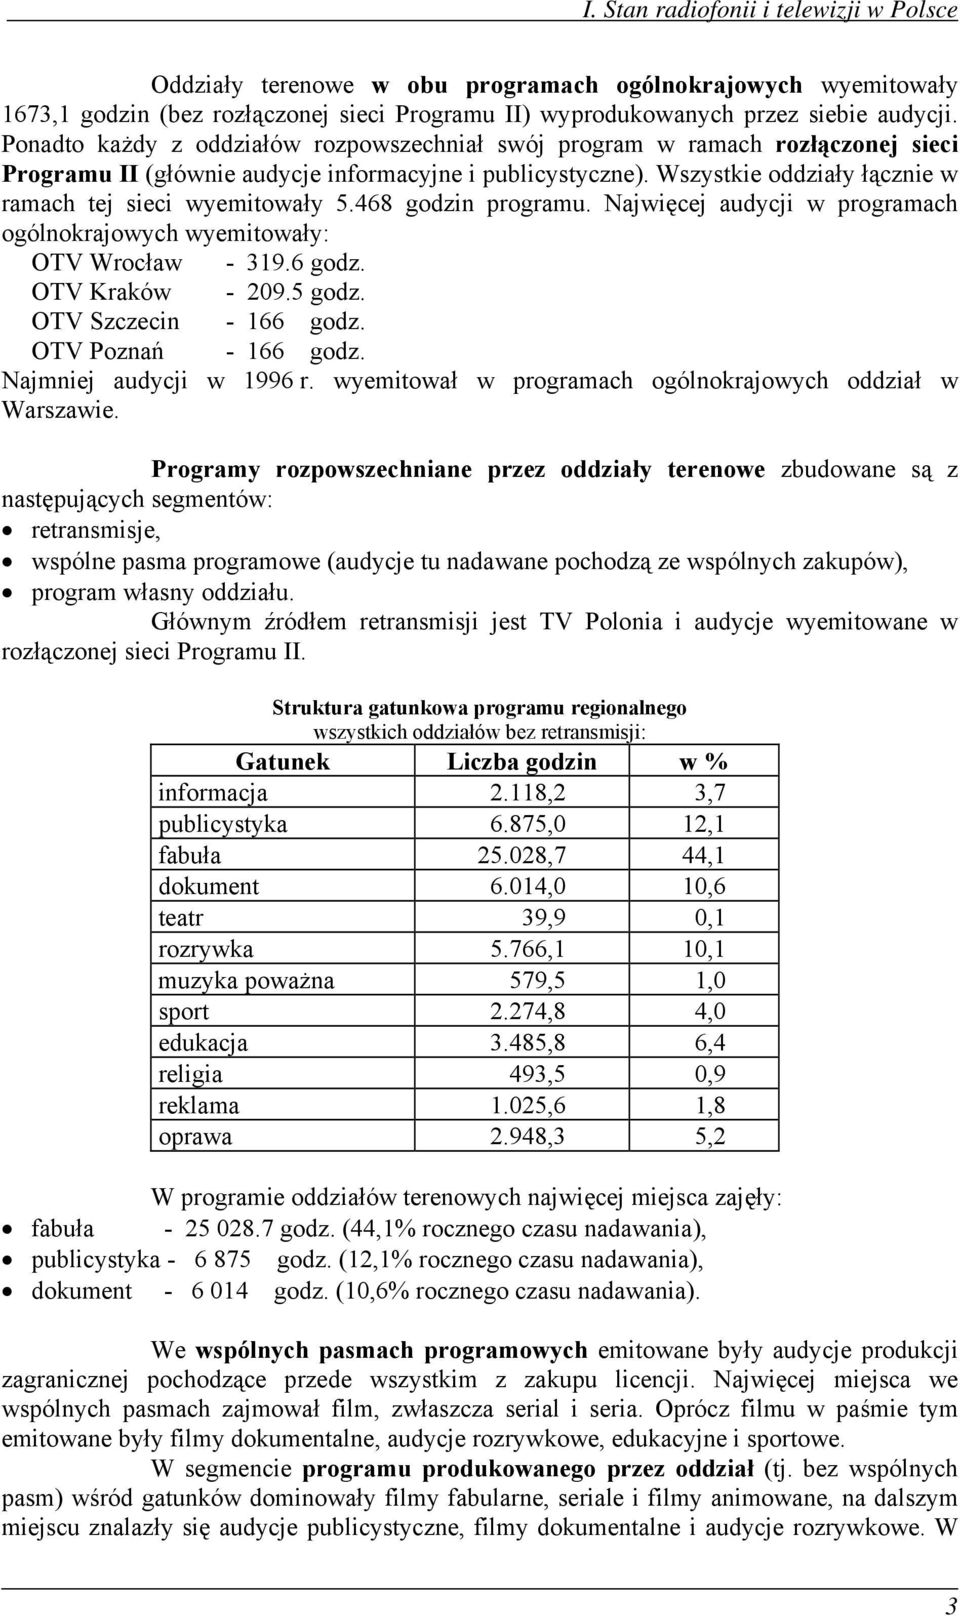 Wszystkie oddziały łącznie w ramach tej sieci wyemitowały 5.468 godzin programu. Najwięcej audycji w programach ogólnokrajowych wyemitowały: OTV Wrocław - 319.6 godz. OTV Kraków - 209.5 godz.